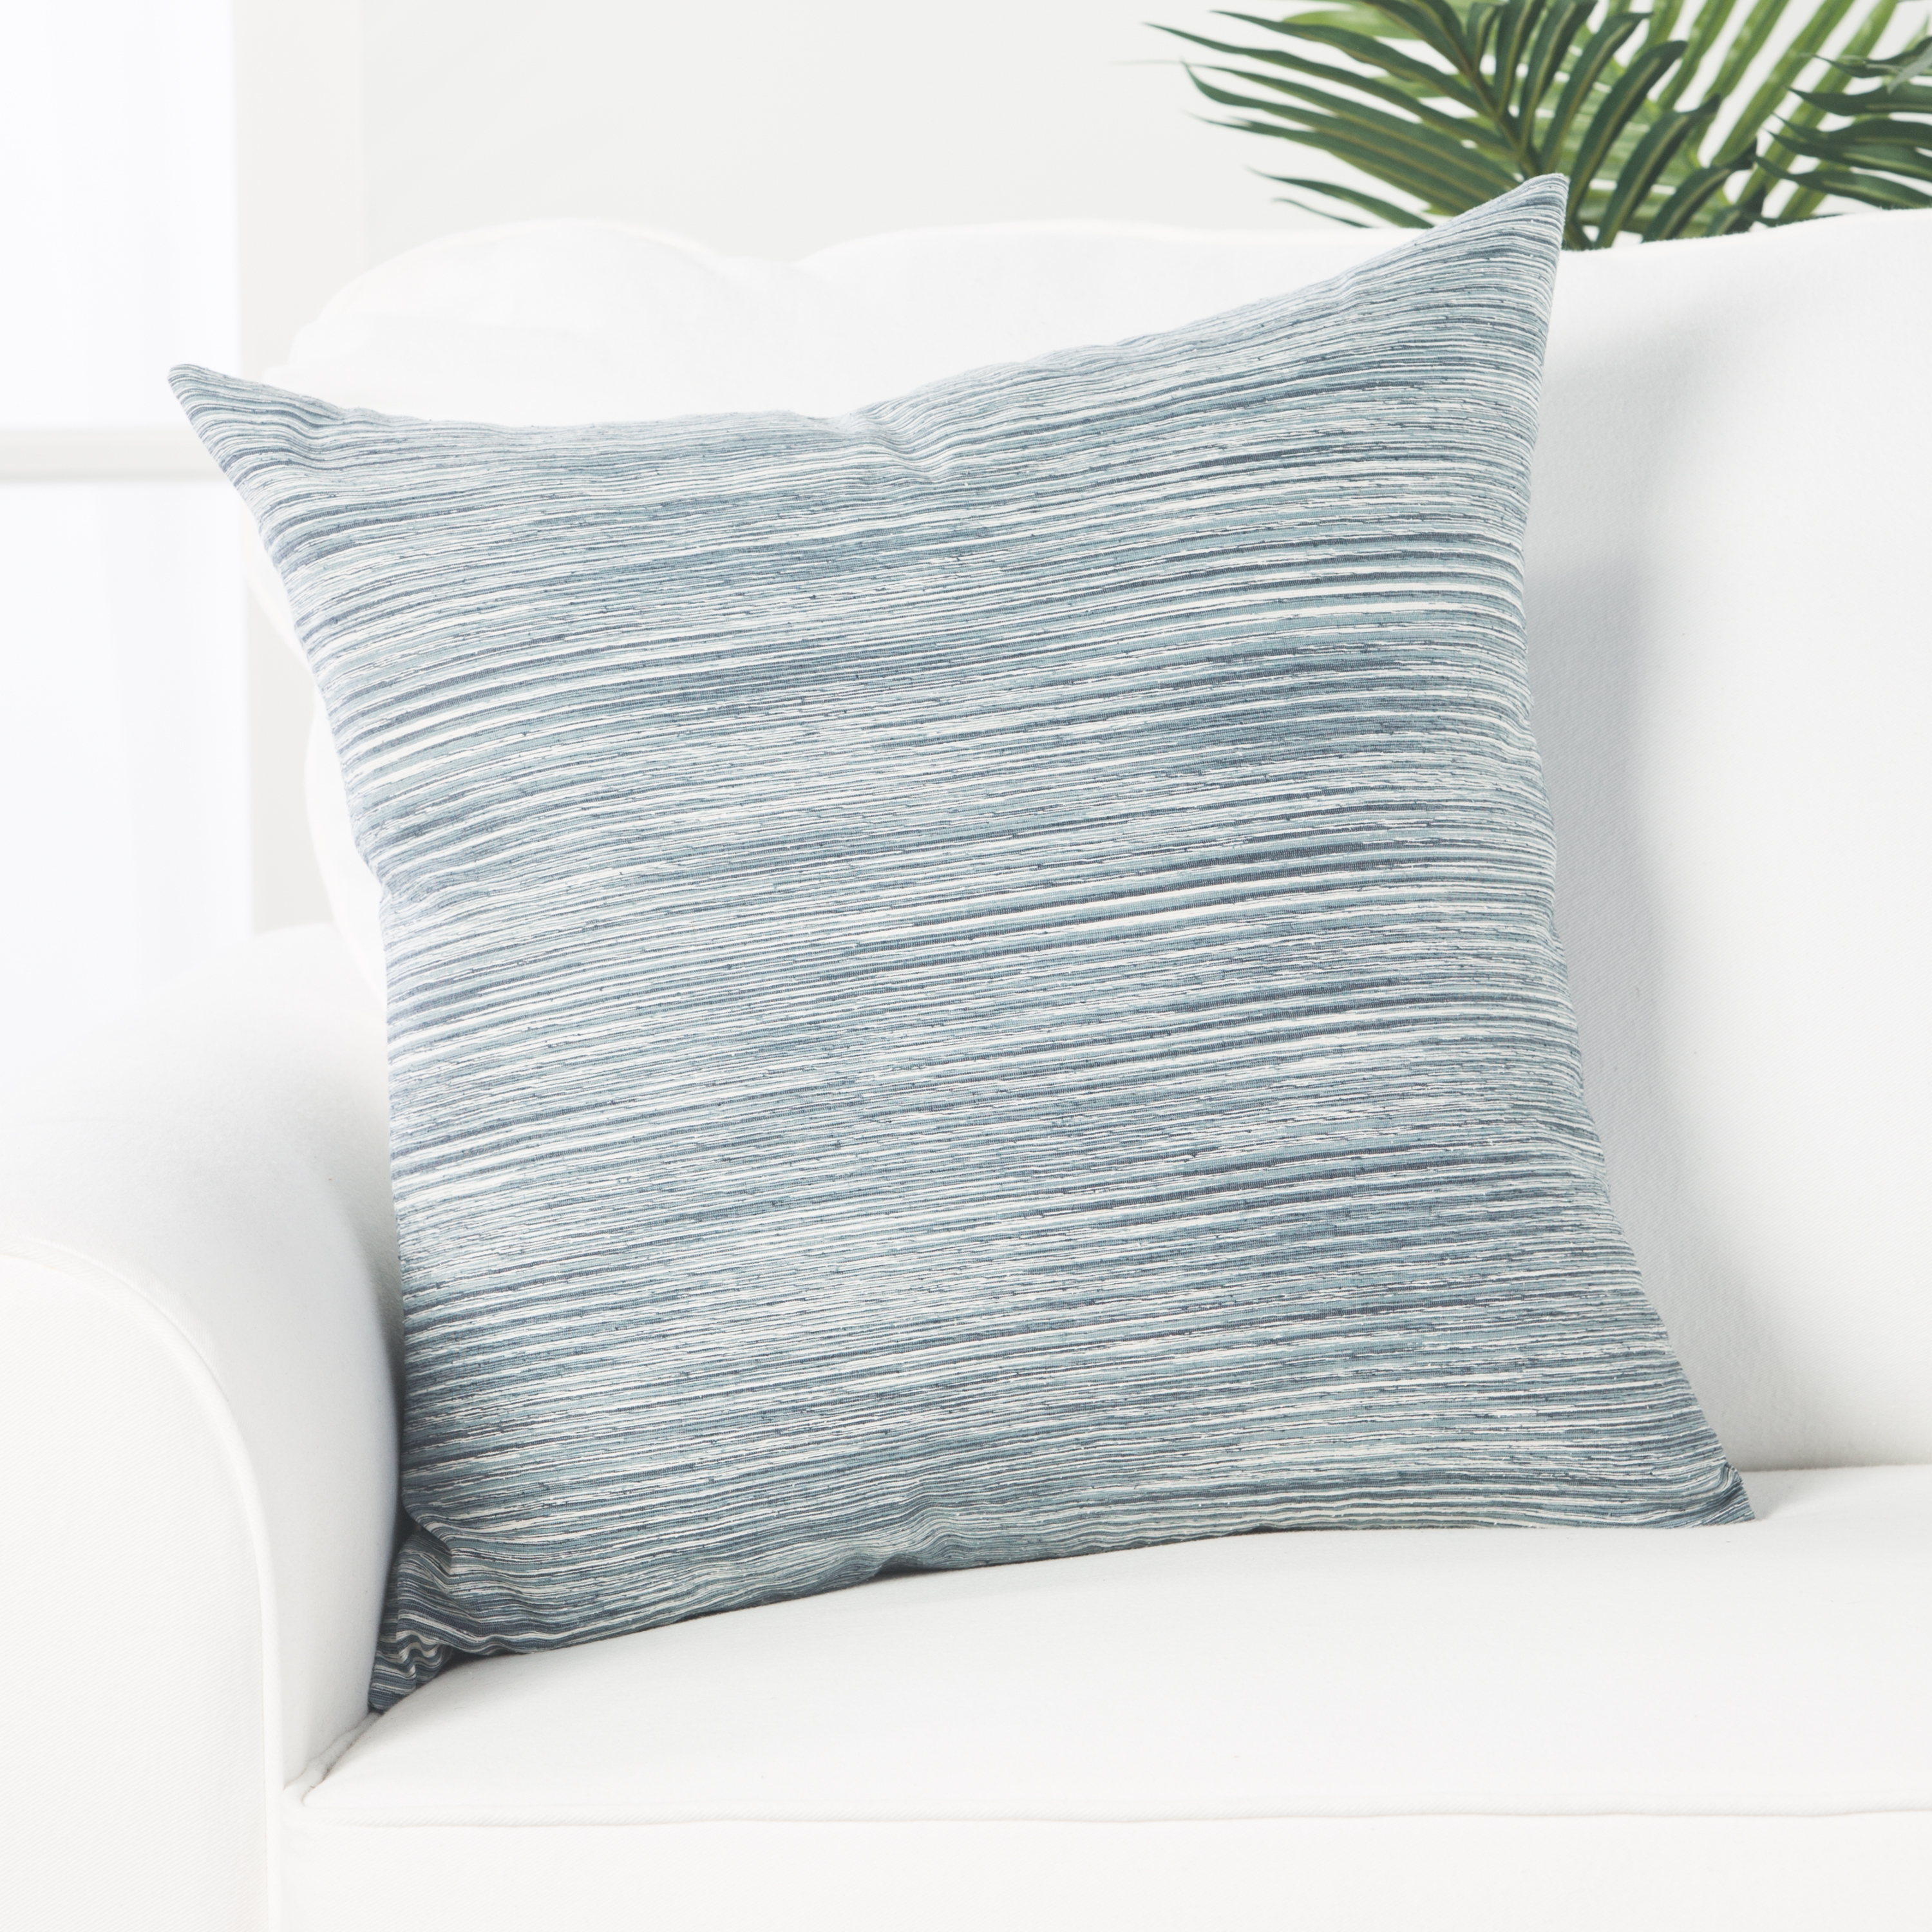 Design (US) Blue 22"X22" Pillow - Image 3